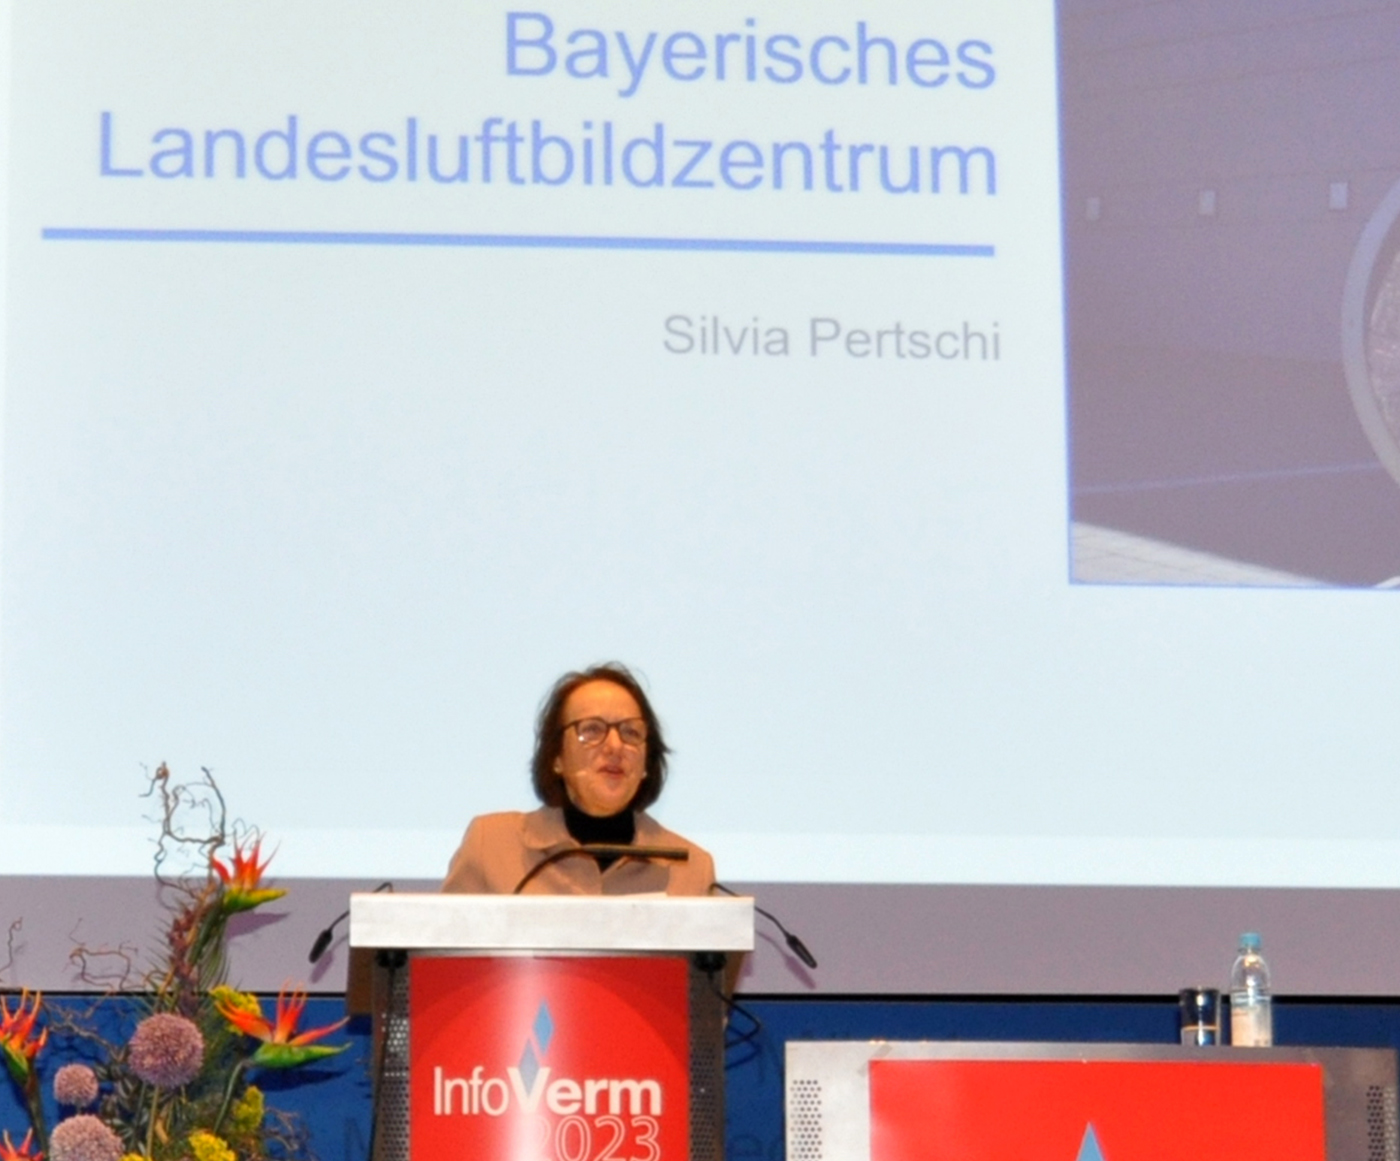 Eine Rednerin steht hinter dem Rednerpult und hält ihren Vortrag. Im Hintergrund steht zu lesen Bayerisches Landesluftbildzentrum.